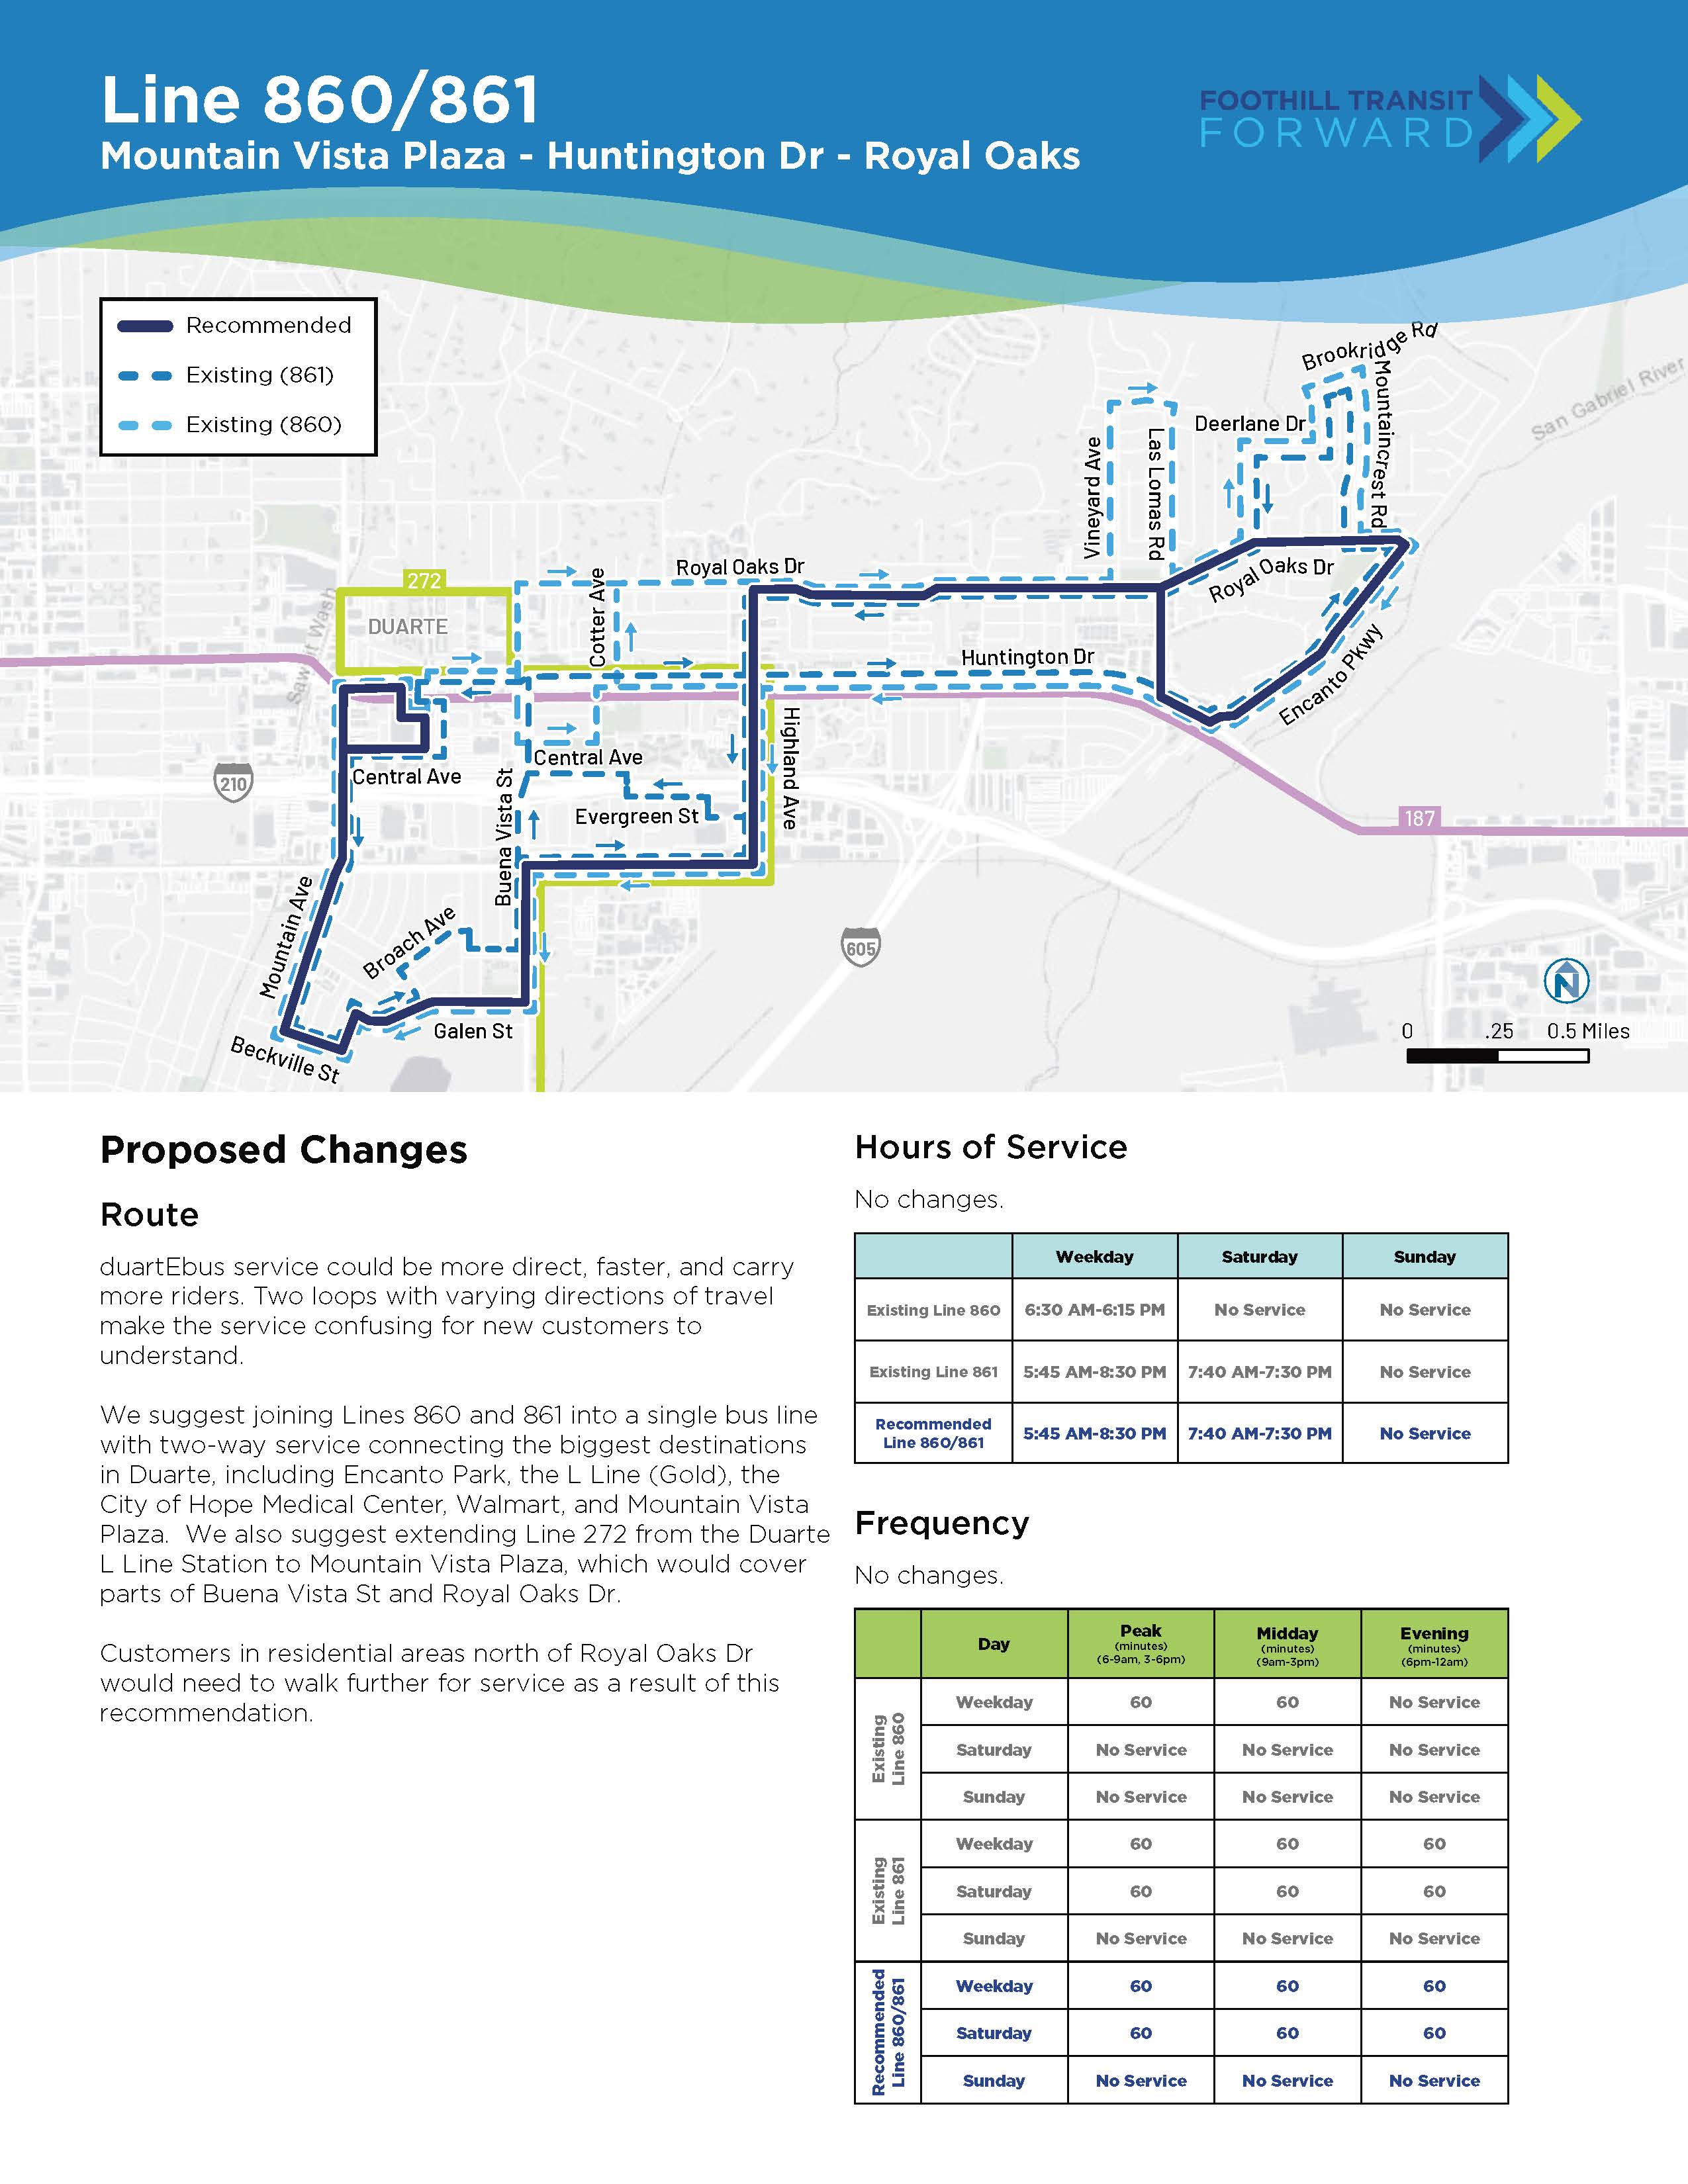 拟议的更改： 路线：duartEbus 可以更直接、更快速，并搭载更多乘客。 2 个不同方向的循环让新客户感到困惑。 我们建议将 860 号线和 861 号线合并为一条单线线路，提供双向服务，连接大型目的地，如 Encanto Park、L 线、希望之城、沃尔玛和 Target。 我们建议的 2 号线延长线将覆盖 Buena Vista St 和 Royal Oaks Dr 的部分路段。Royal Oaks Dr 以北的客户需要走得更远。 服务时间和频率：无变化